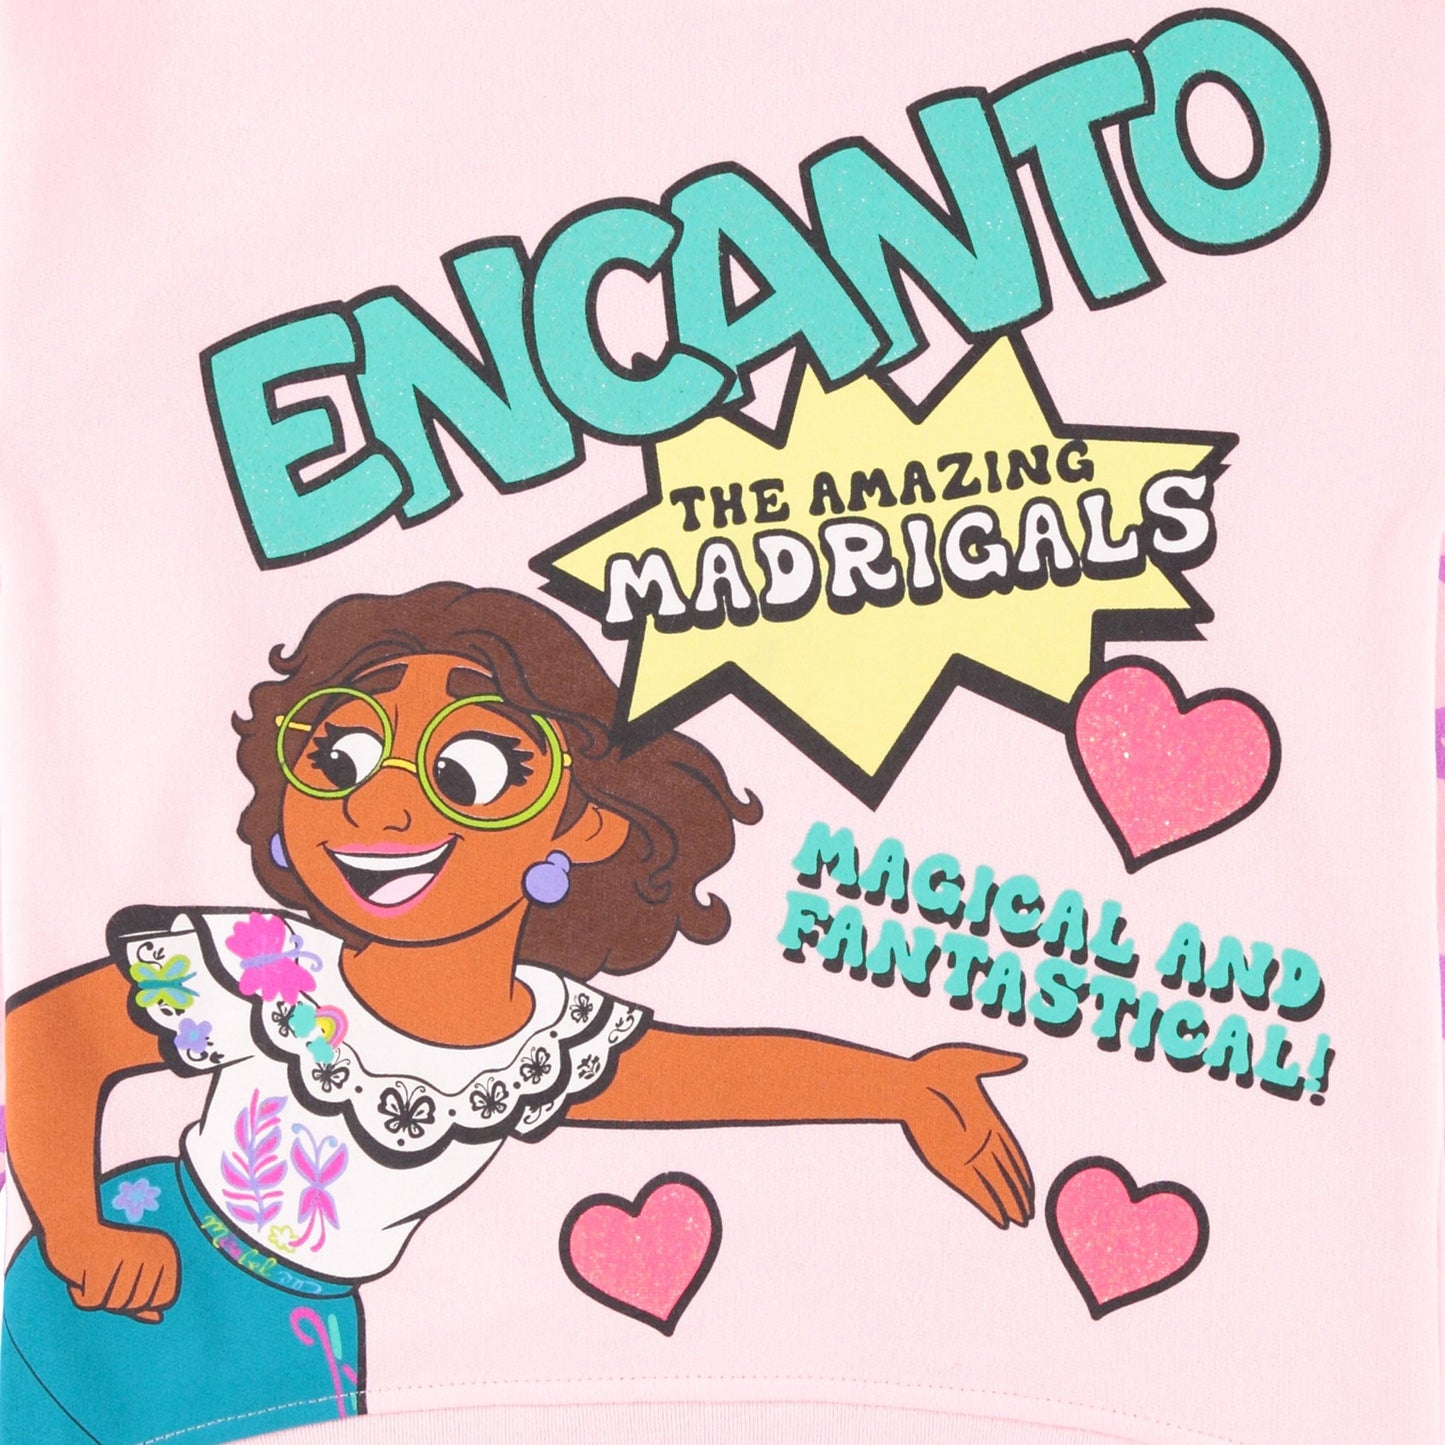 Disney Girls Encanto Sweatshirt - Mirabel, Isabela and Luisa - Sizes 2T-16